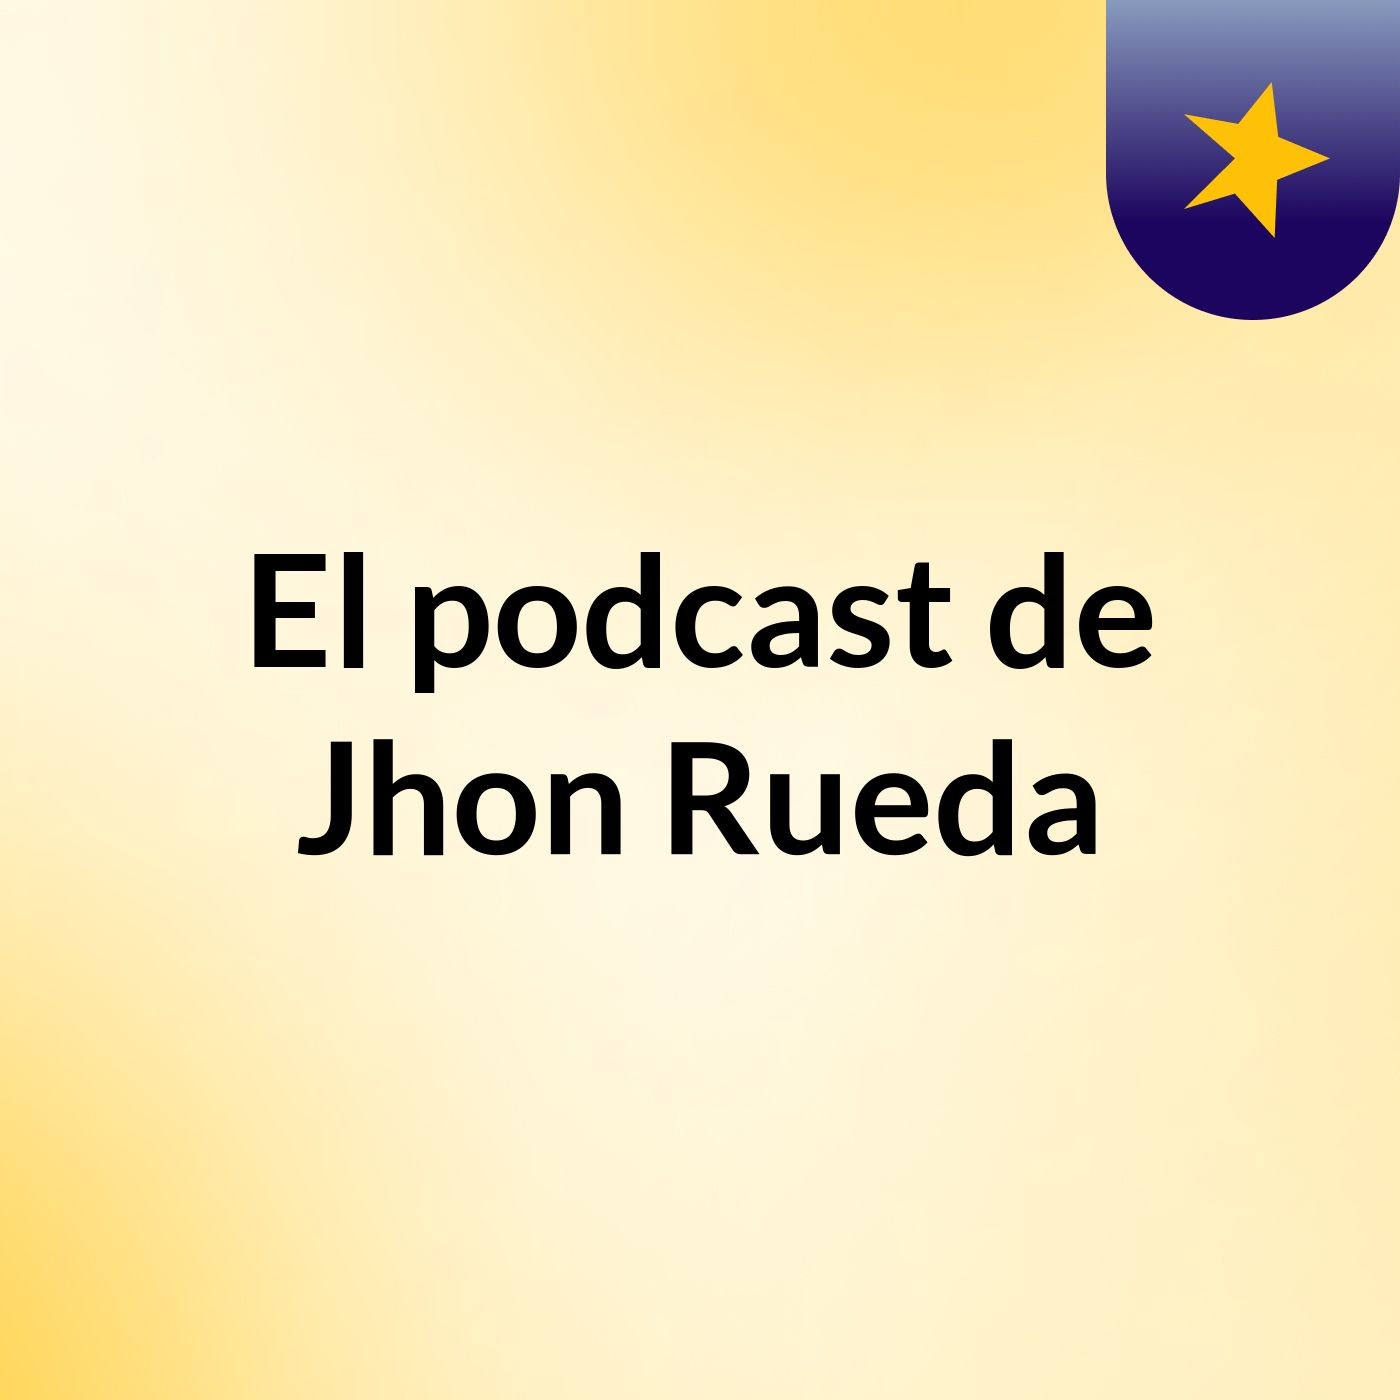 Pulga21 - El podcast de Jhon Rueda